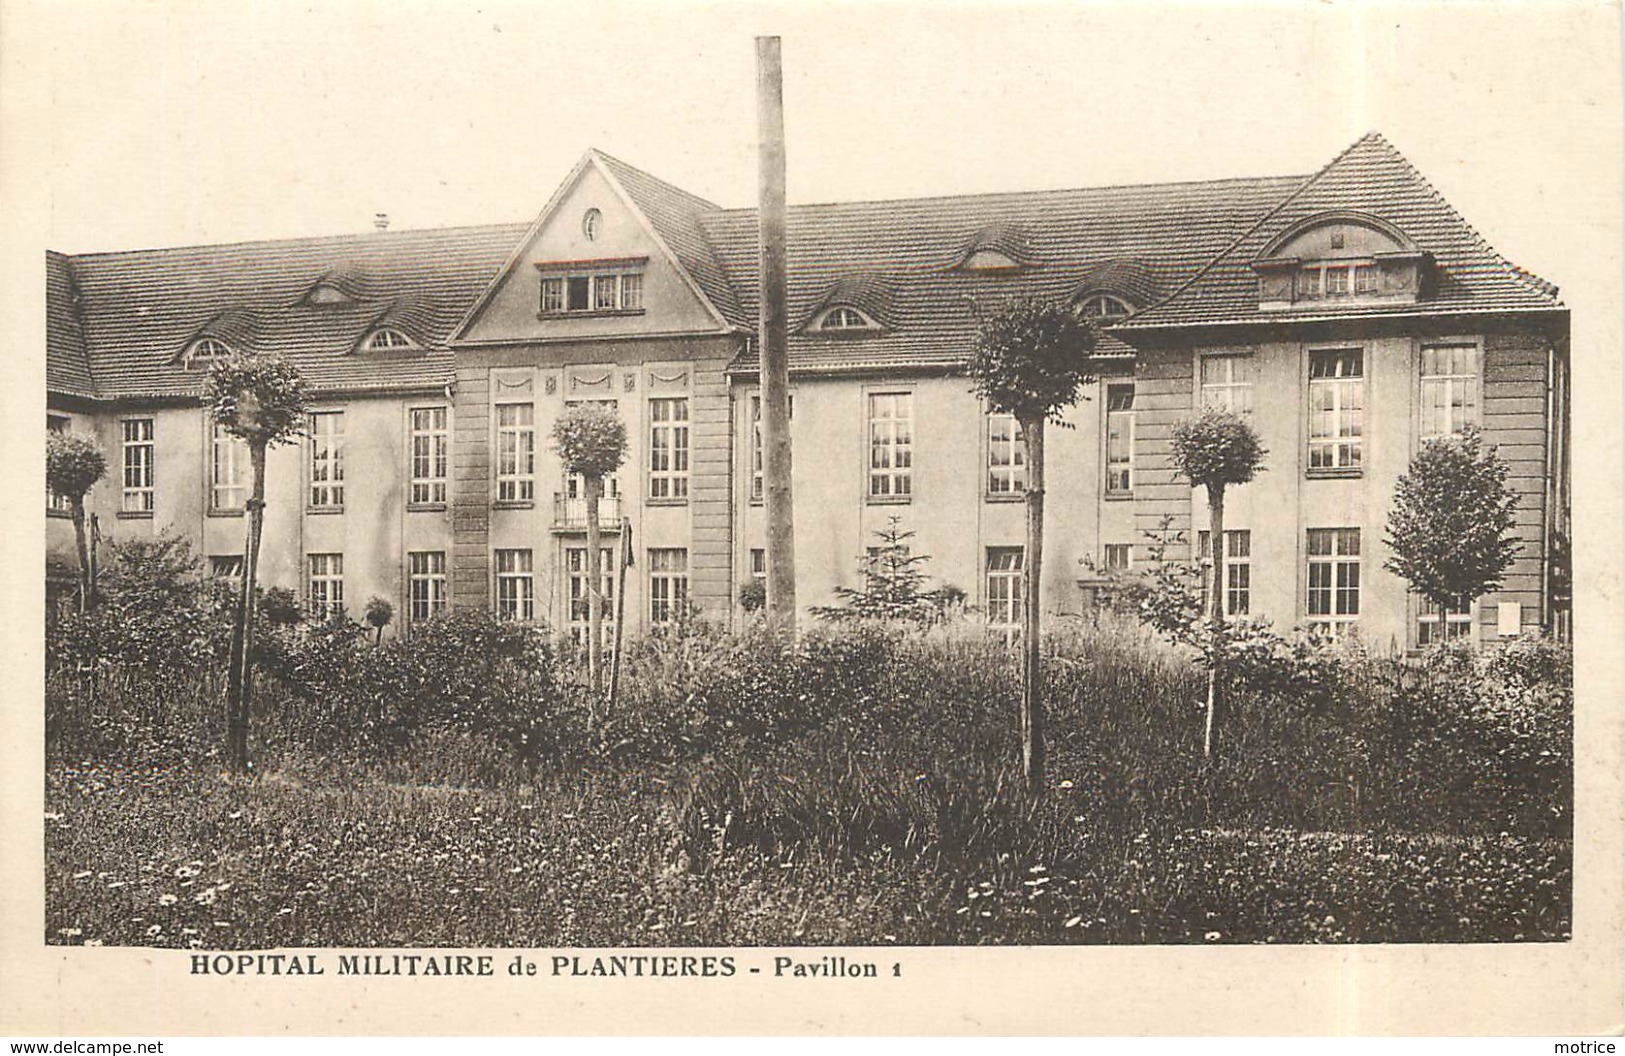 METZ - Hôpital Militaire de Plantières,lot de 12 cartes.